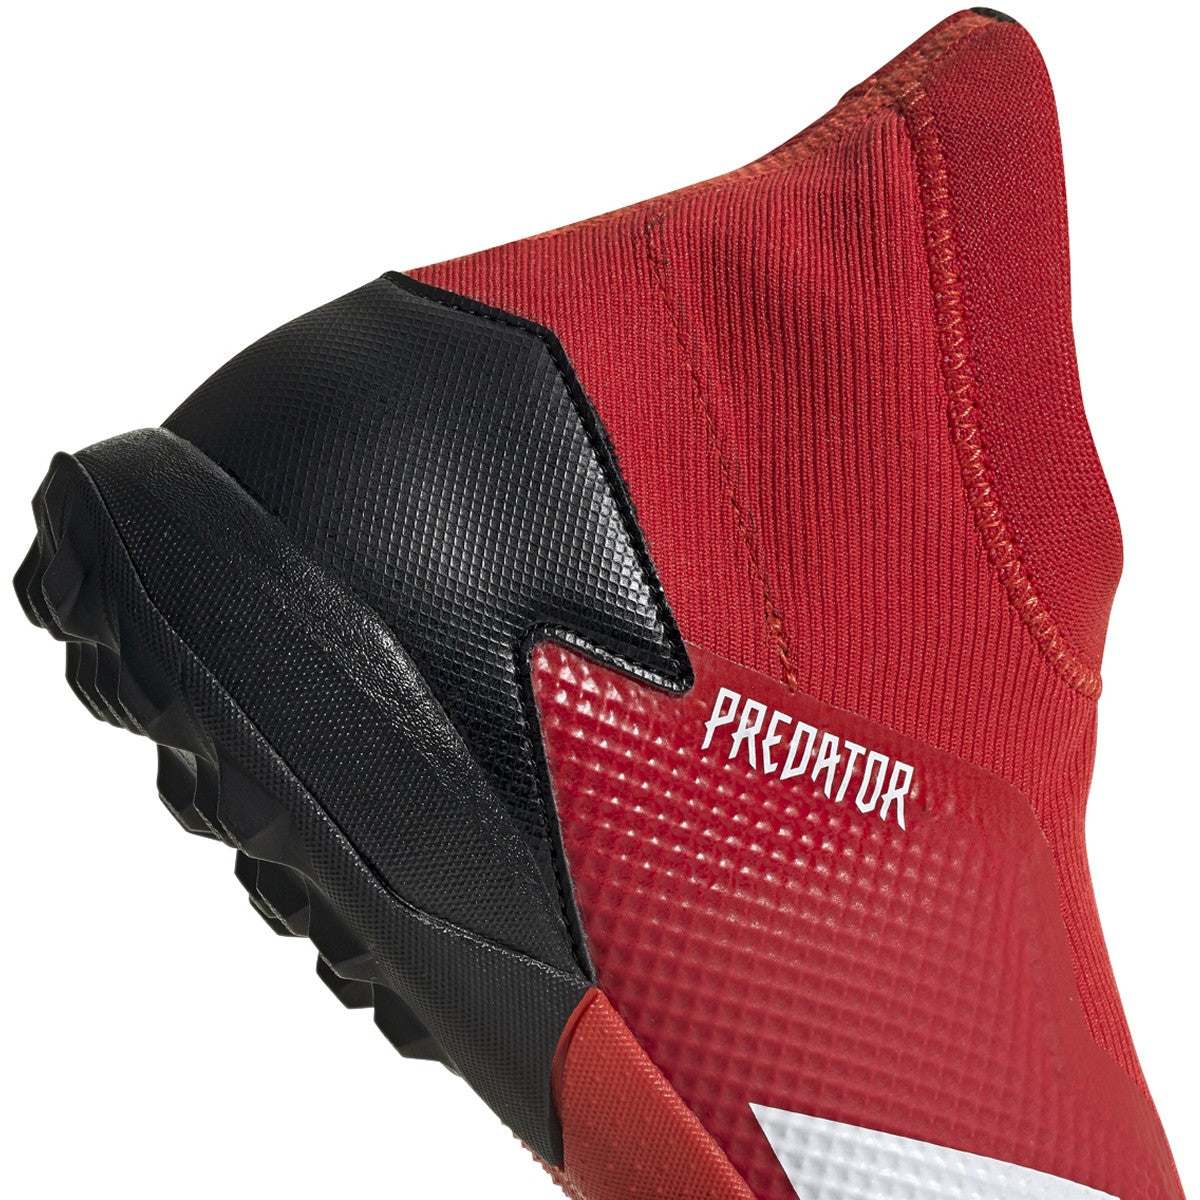 Adidas Predator 20.3 LL Turf Soccer Shoes